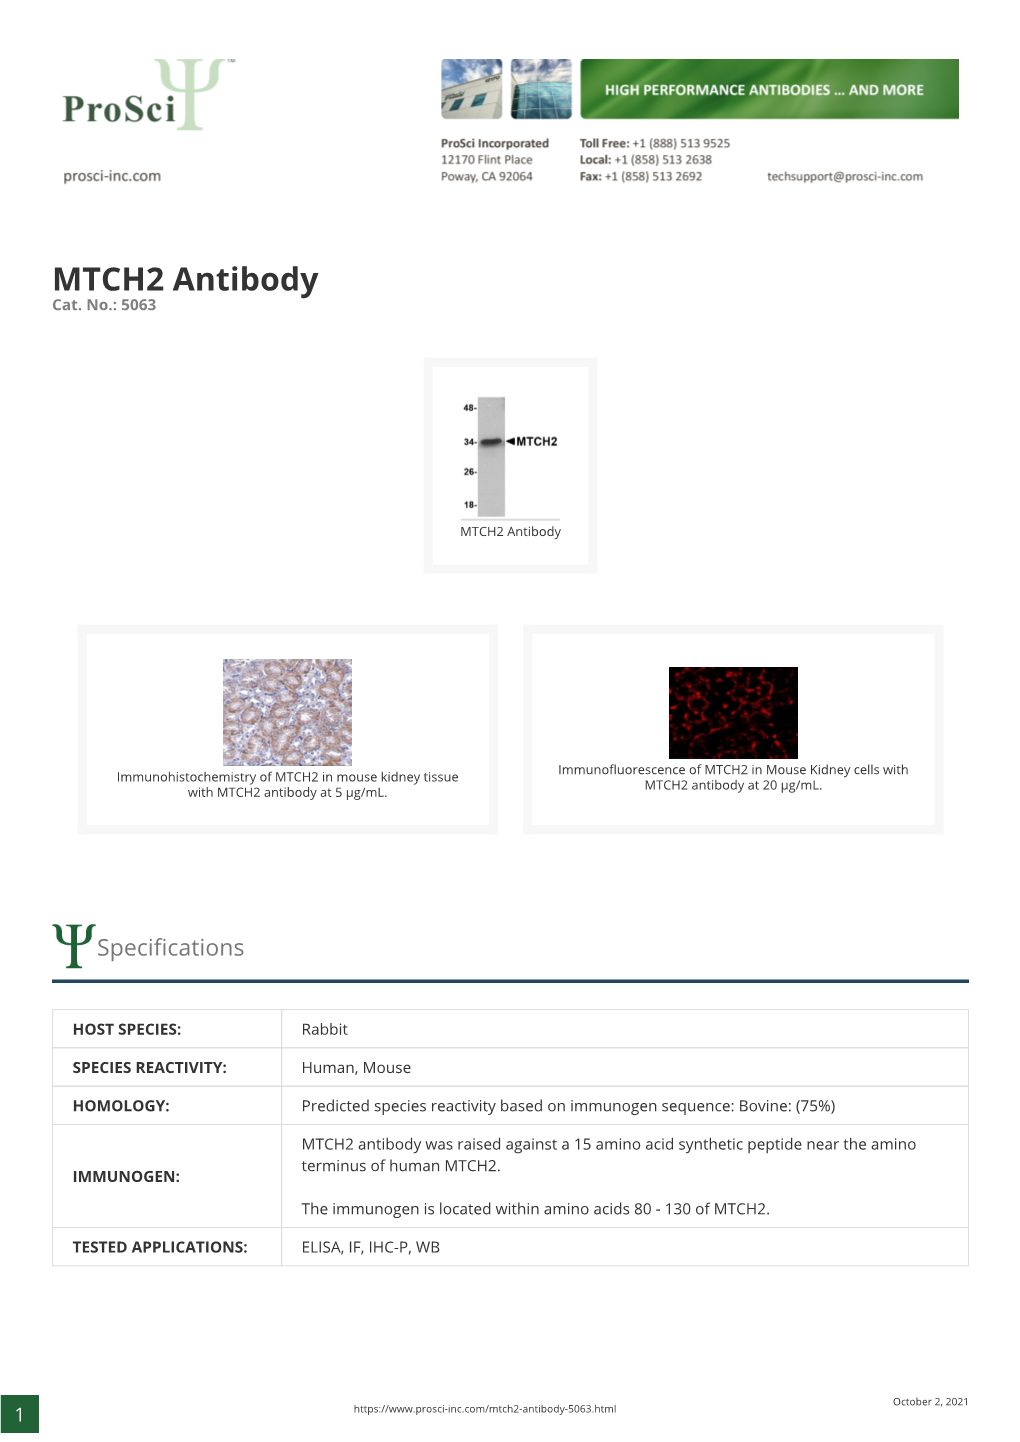 MTCH2 Antibody Cat